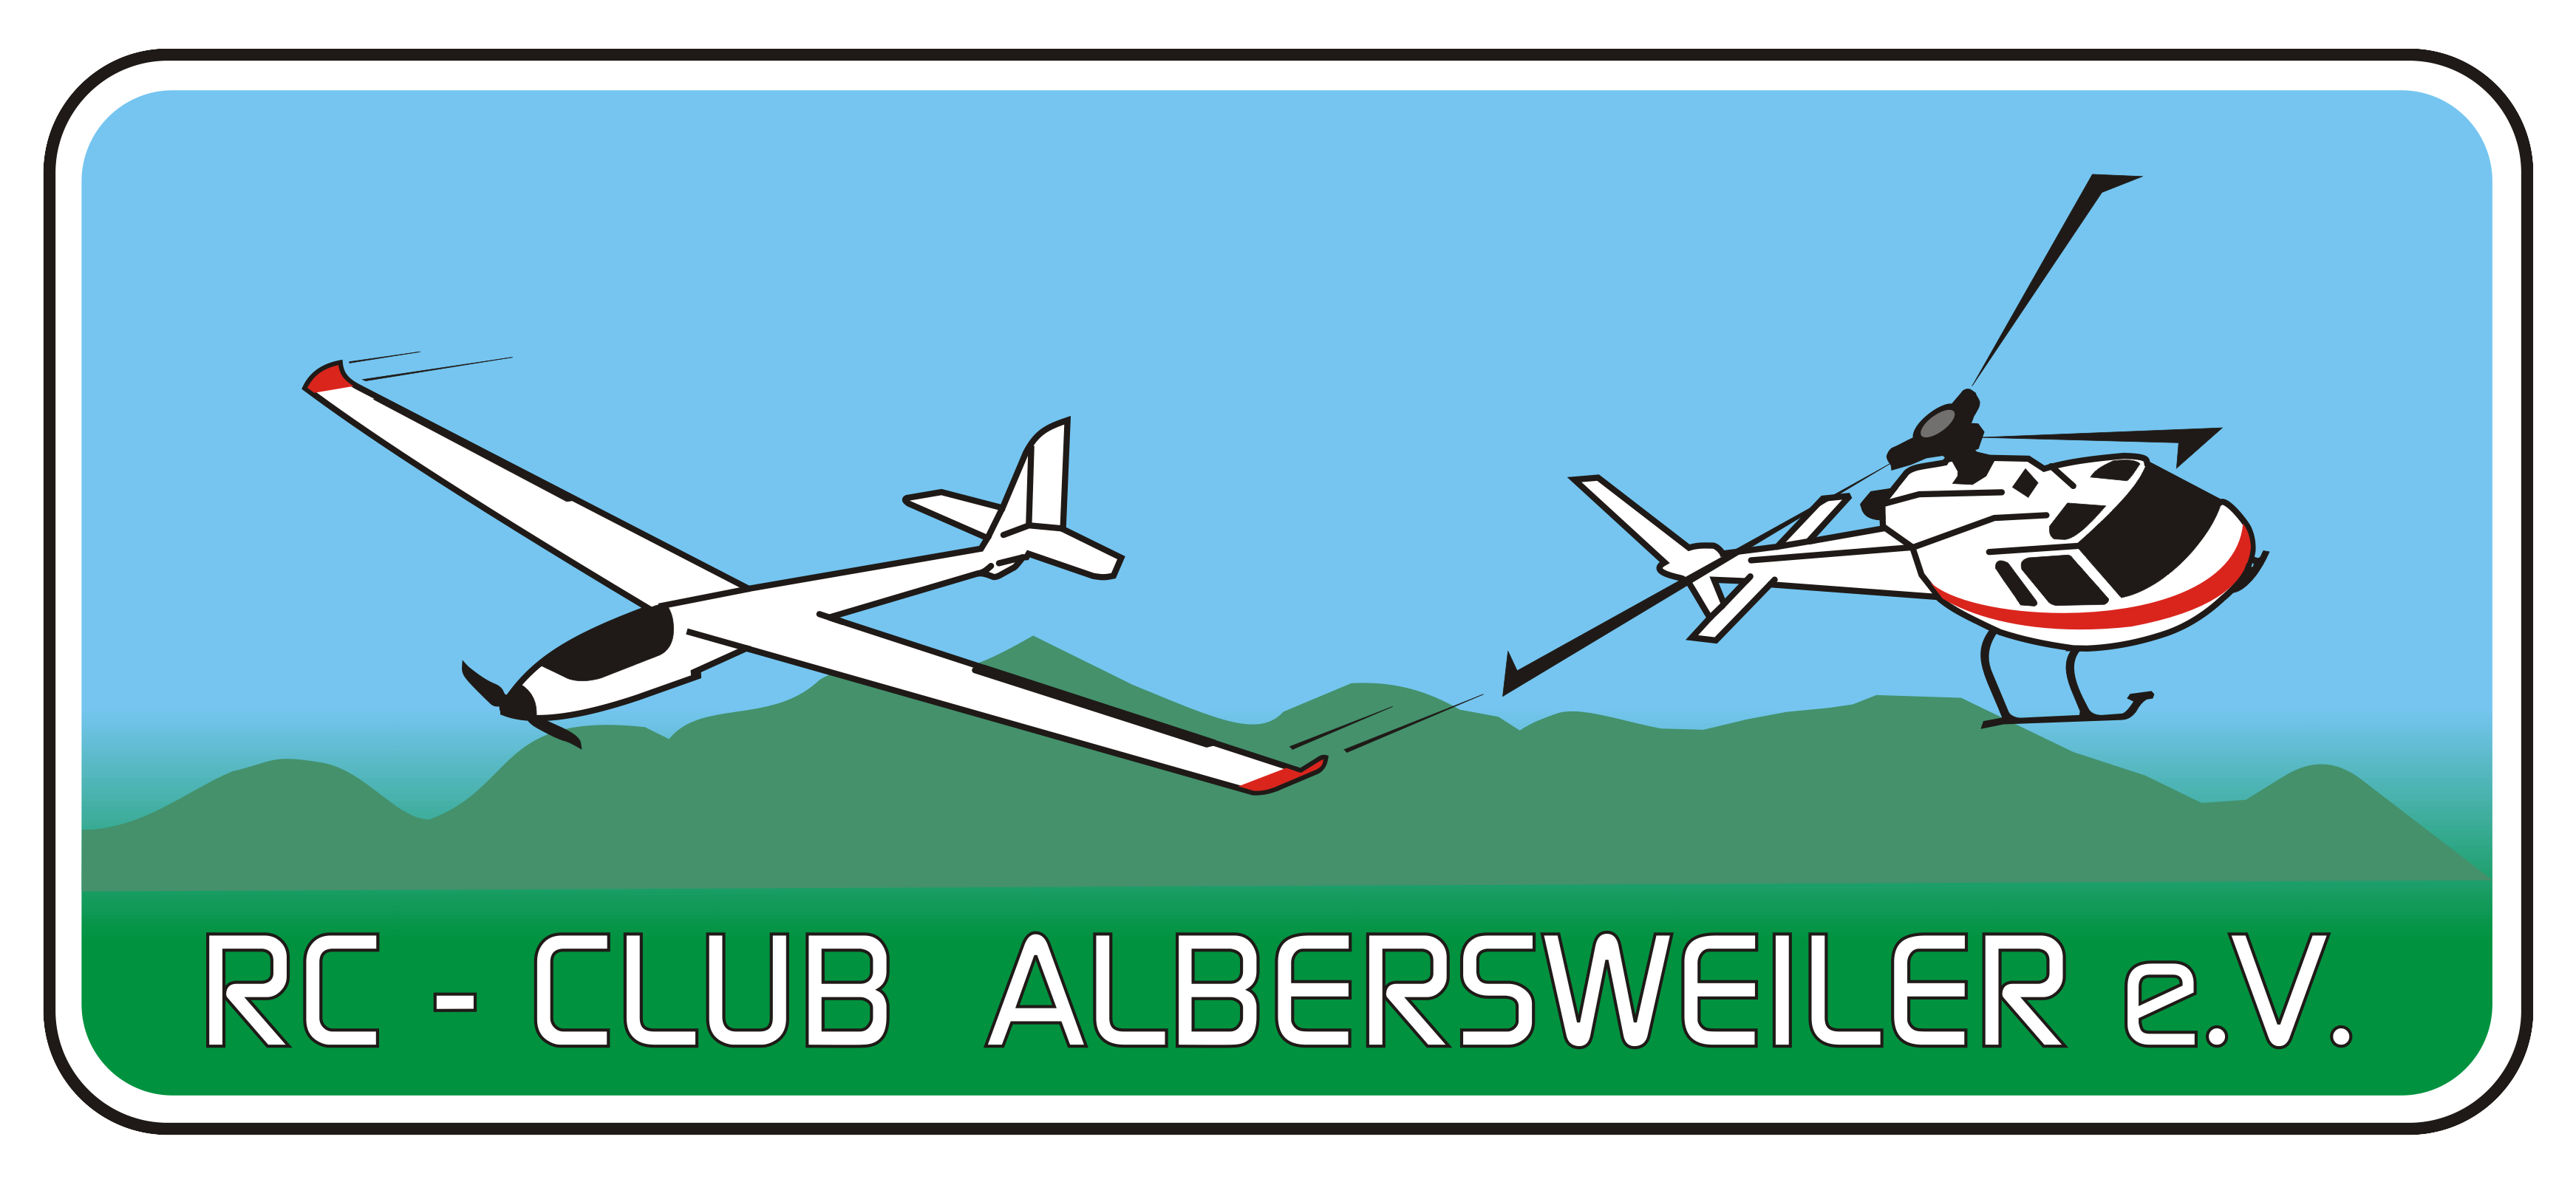 RC-CLUB ALBERSWEILER